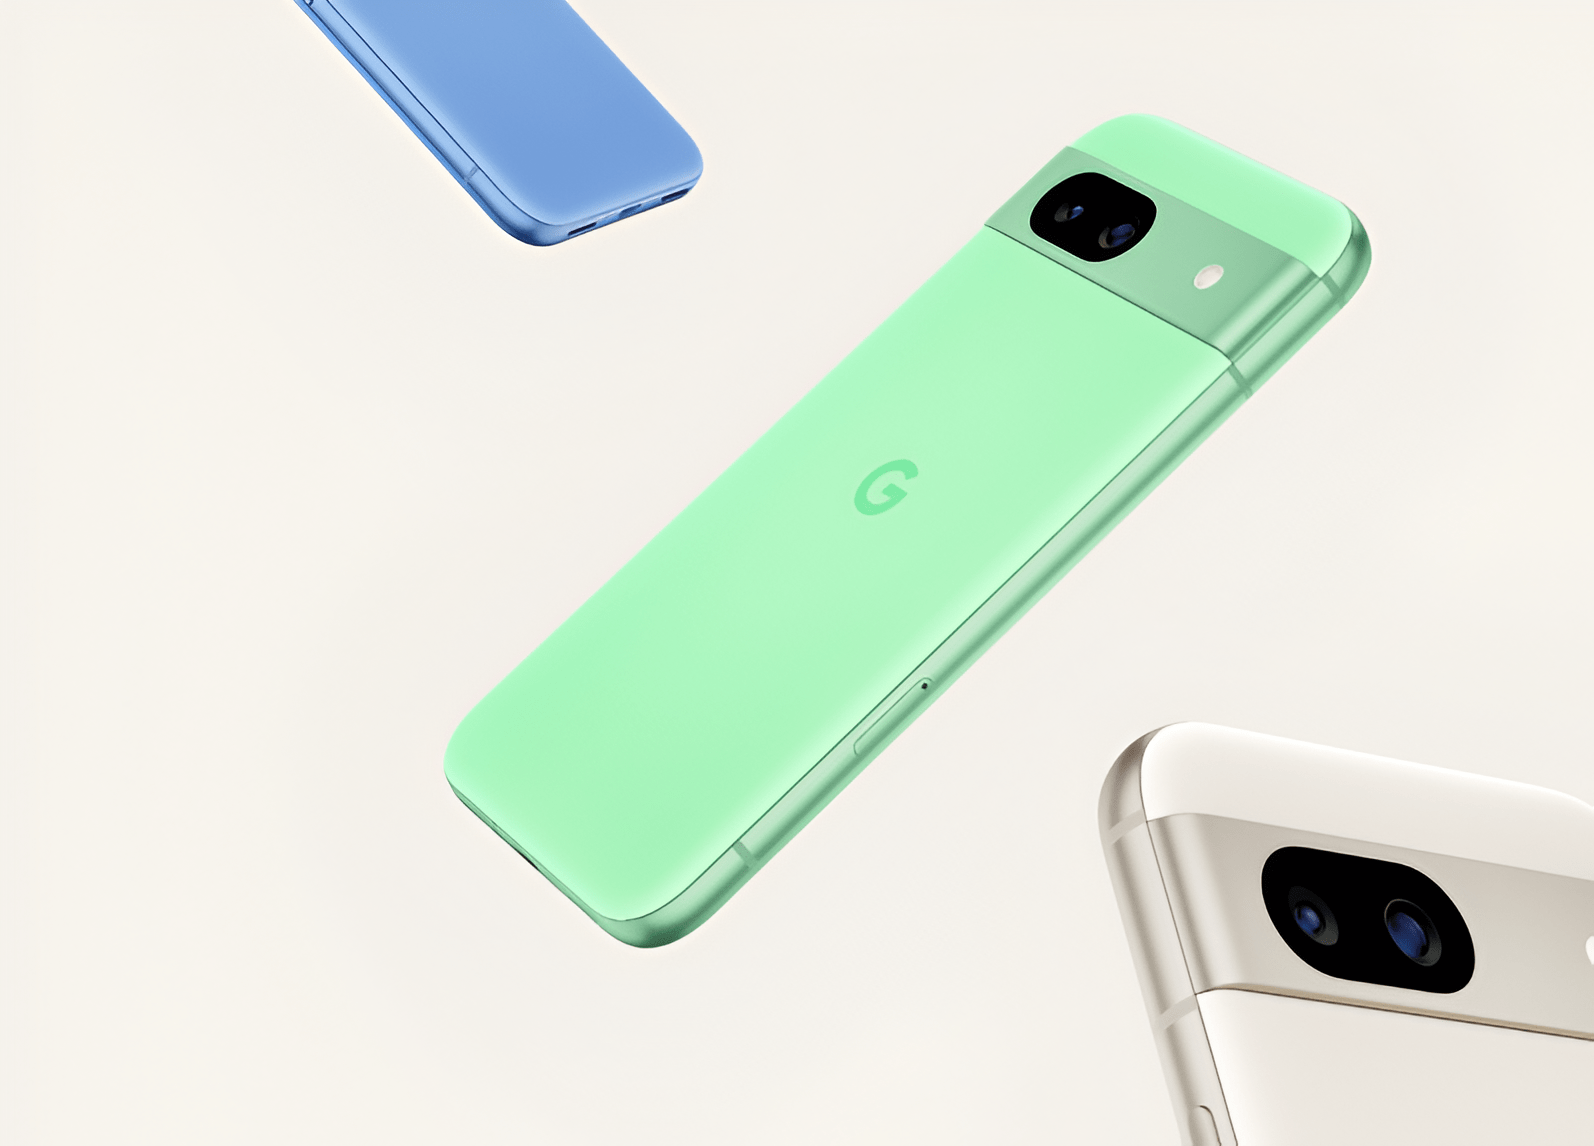 Zielony, biały i niebieski smartfon Google Pixel z widocznym logo G na tylnej obudowie, unoszące się na beżowym tle.